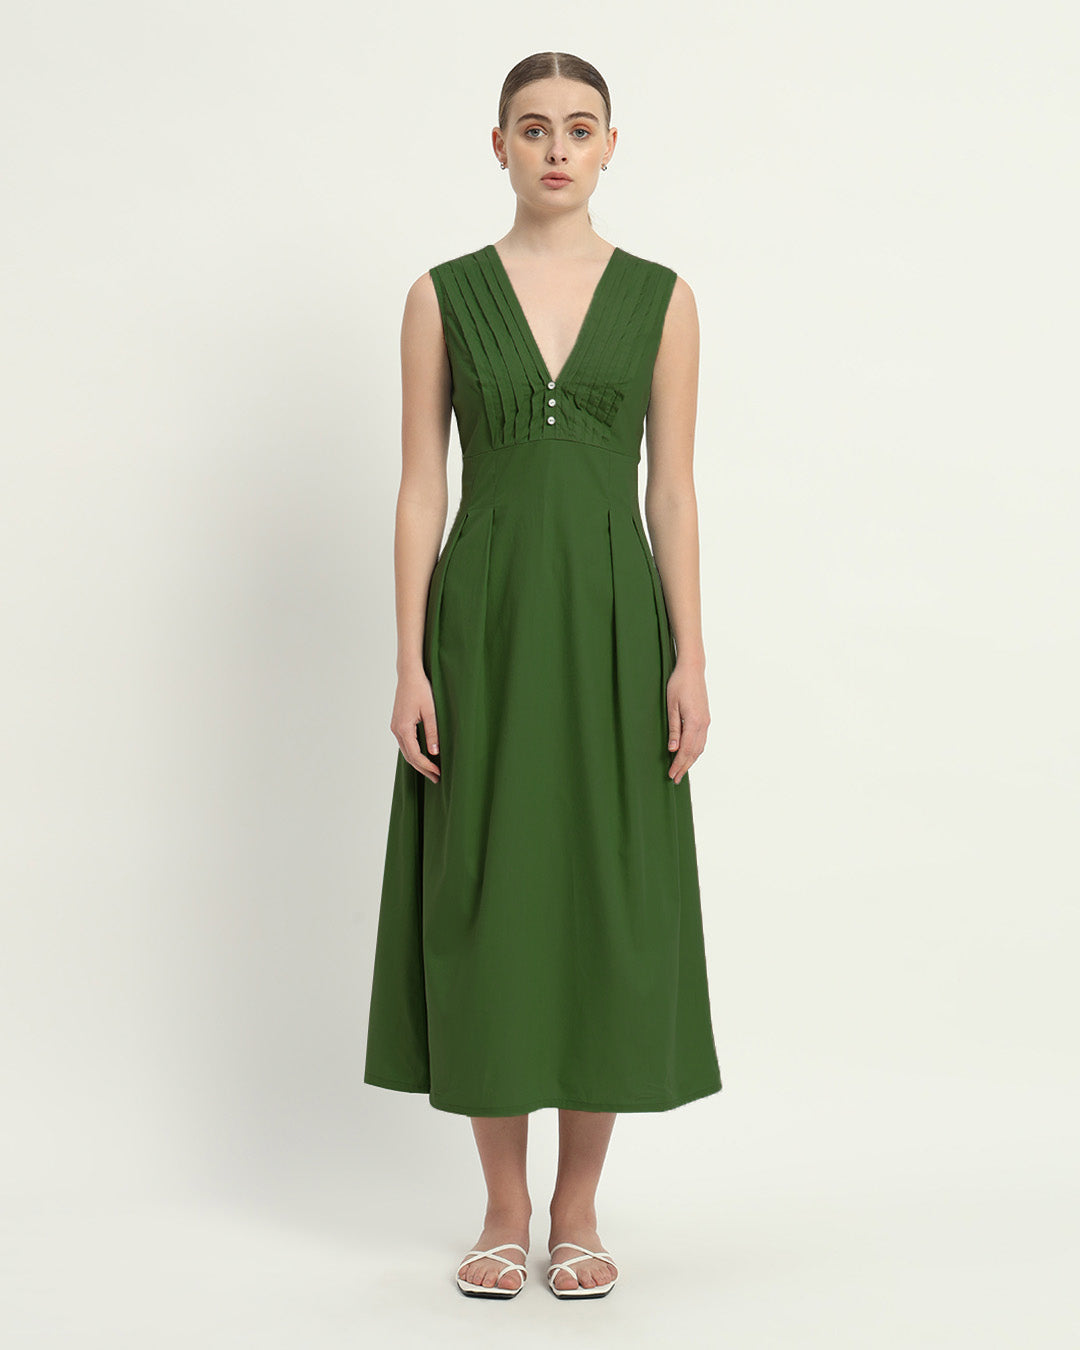 The Emerald Mendoza Cotton Dress